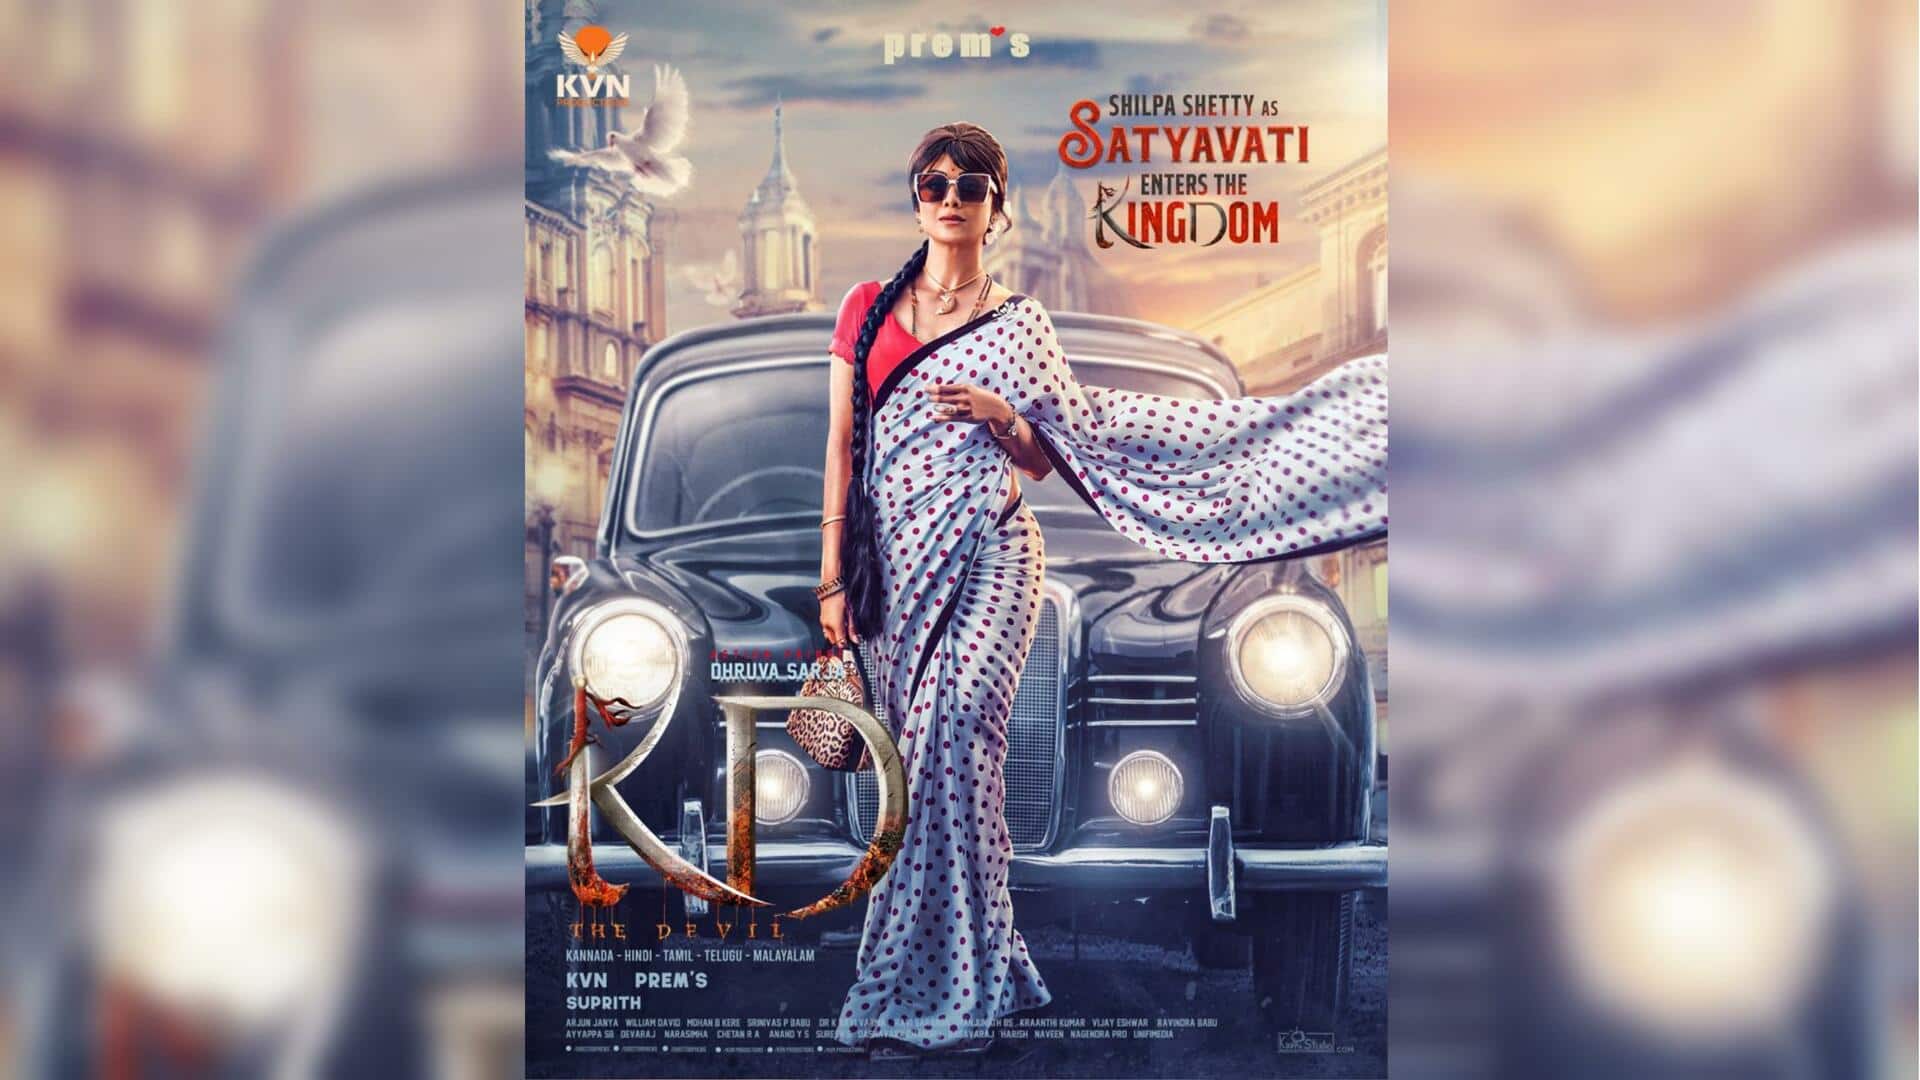 कन्नड़ स्टार ध्रुव सरजा की पैन इंडिया फिल्म 'KD- द डेविल' में शिल्पा शेट्टी की एंट्री